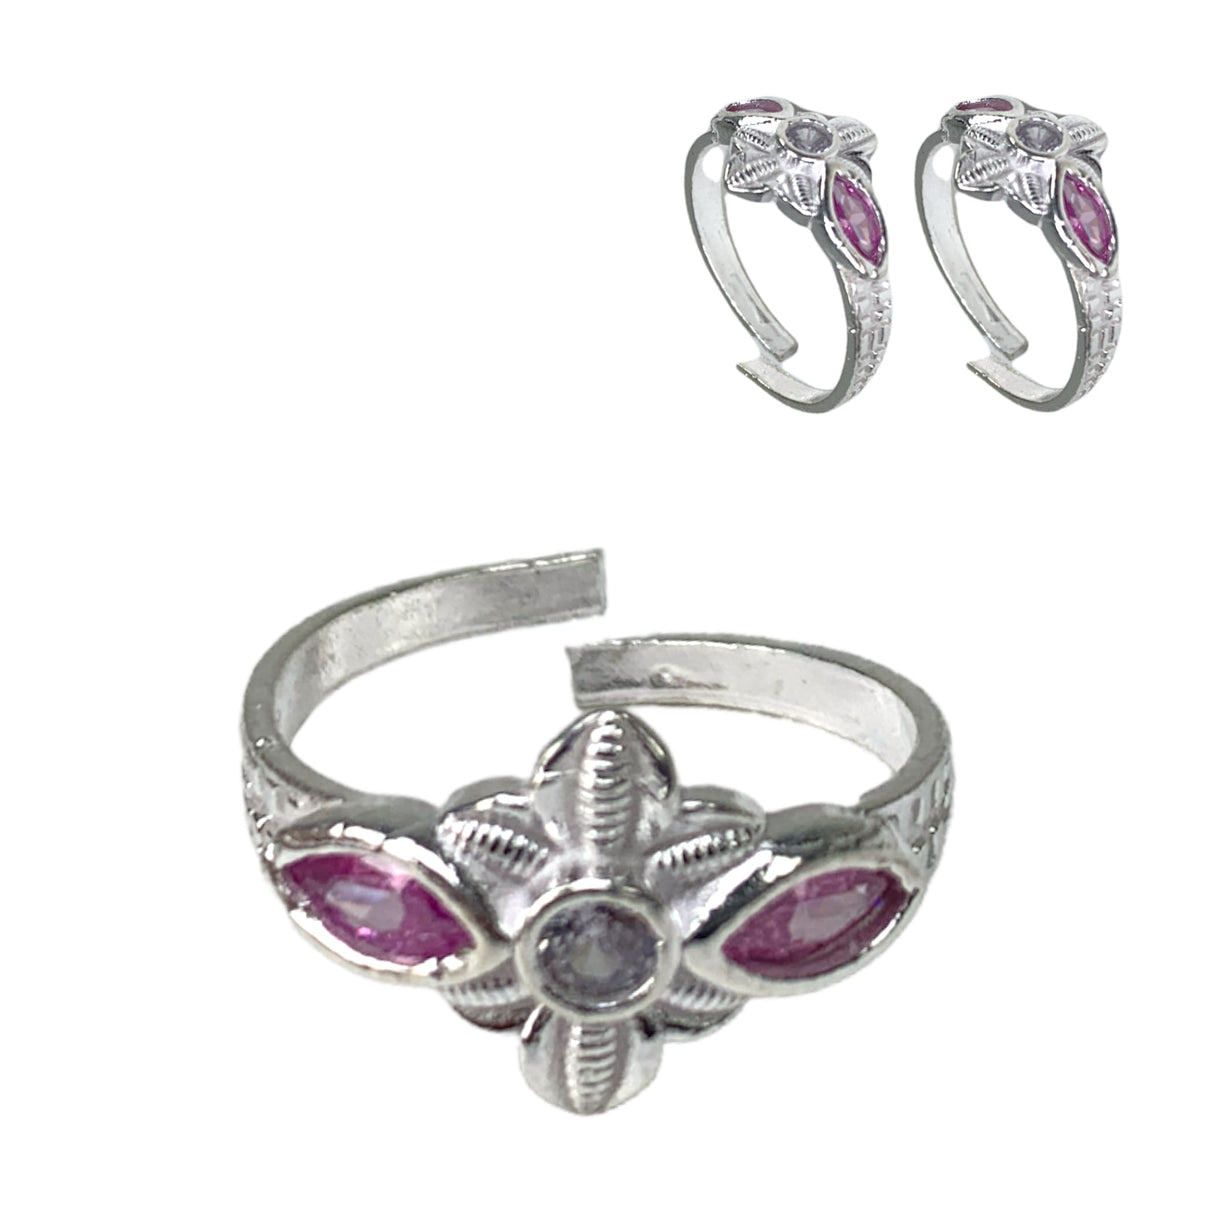 Adjustable silver toe rings pair pink moti indian bichiya